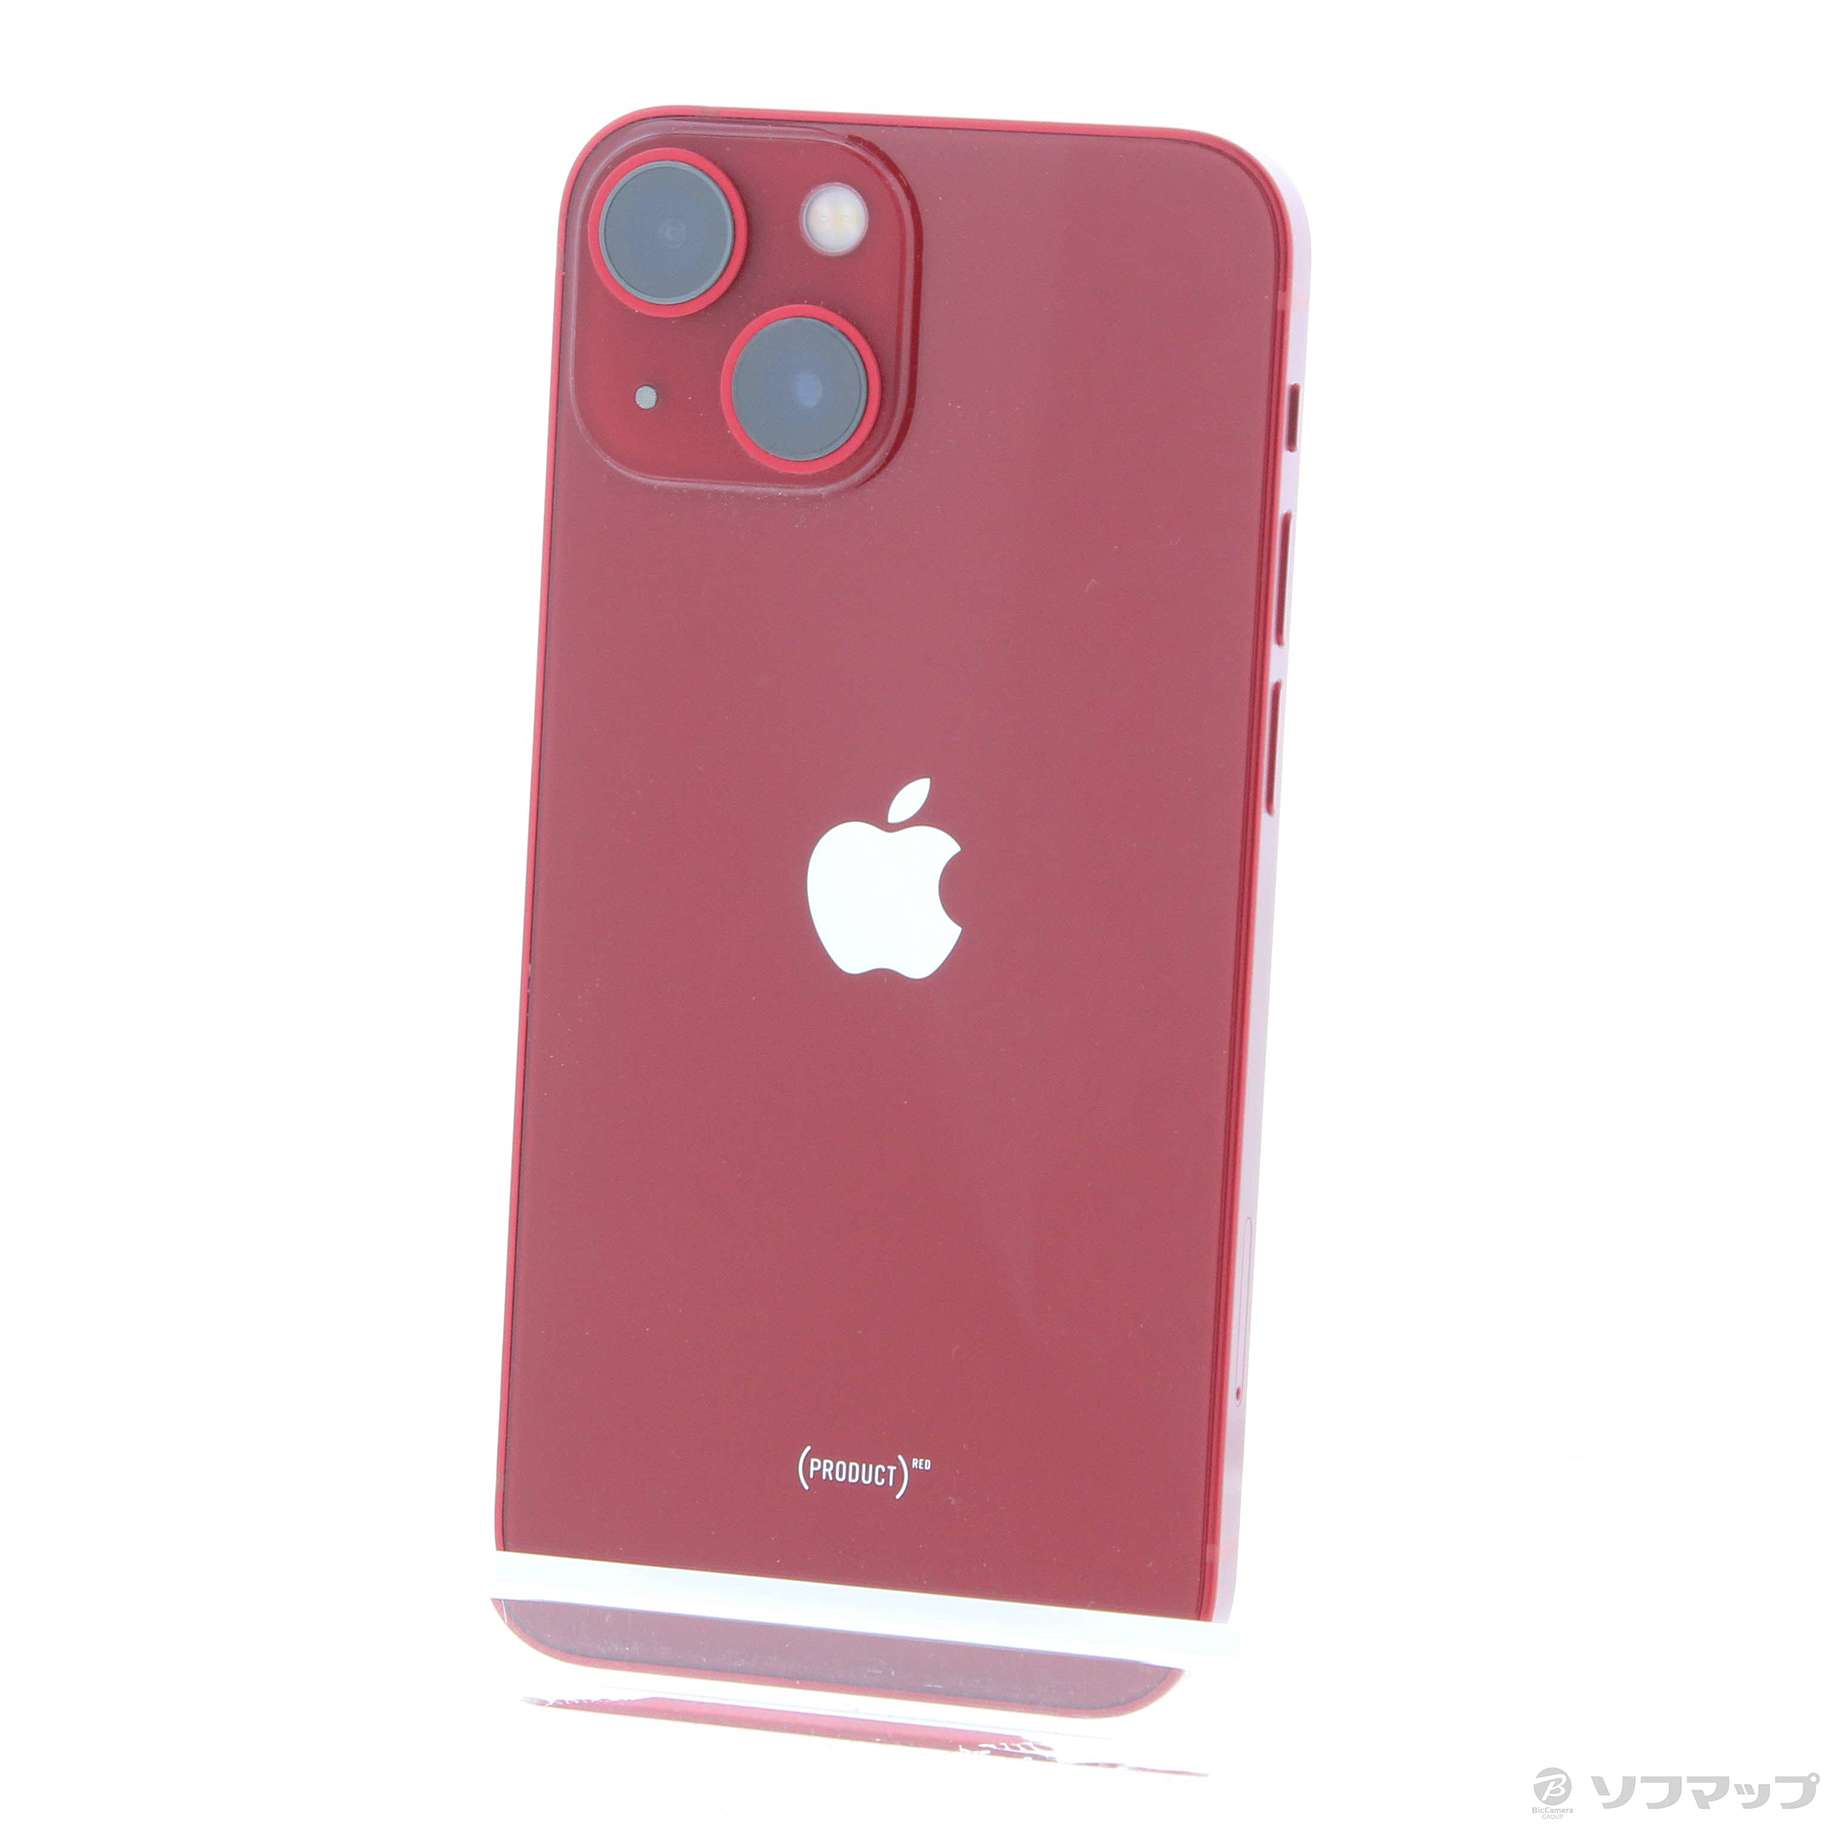 19,880円iPhone 13 mini レッド 128 GB SIMフリー